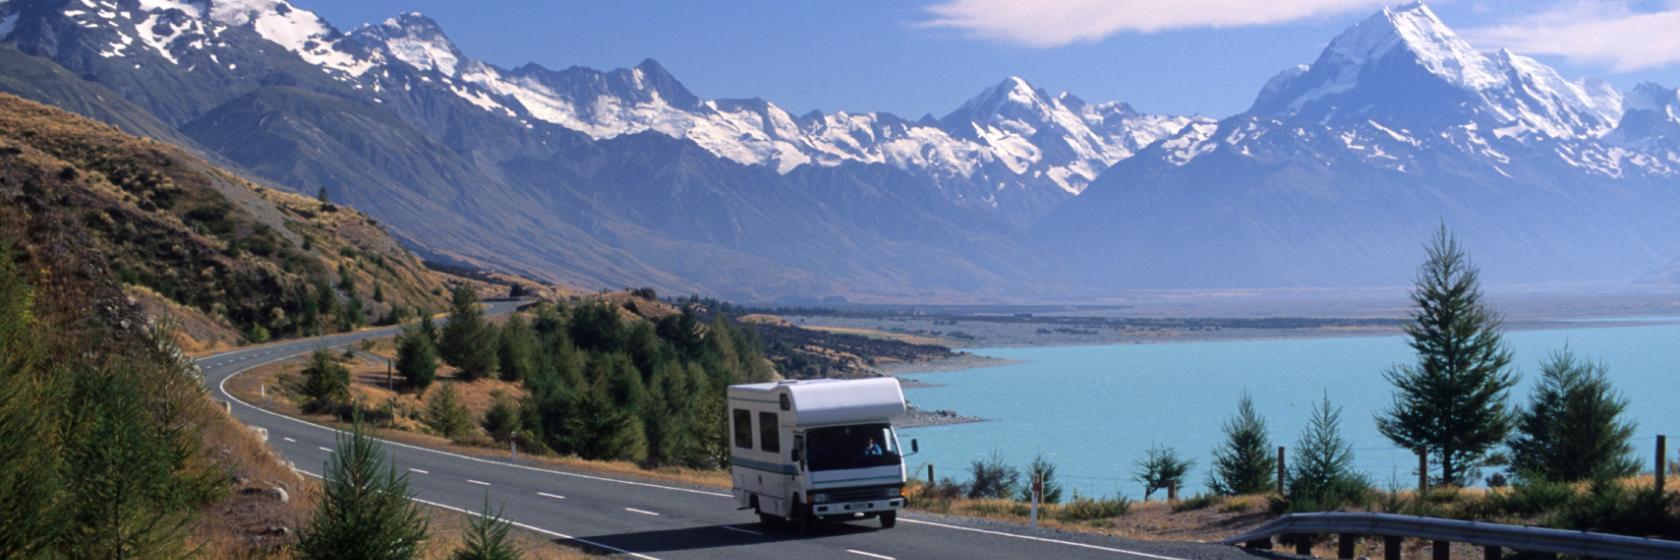 マウント クック国立公園 ニュージーランド の人気ホテルをお得に予約